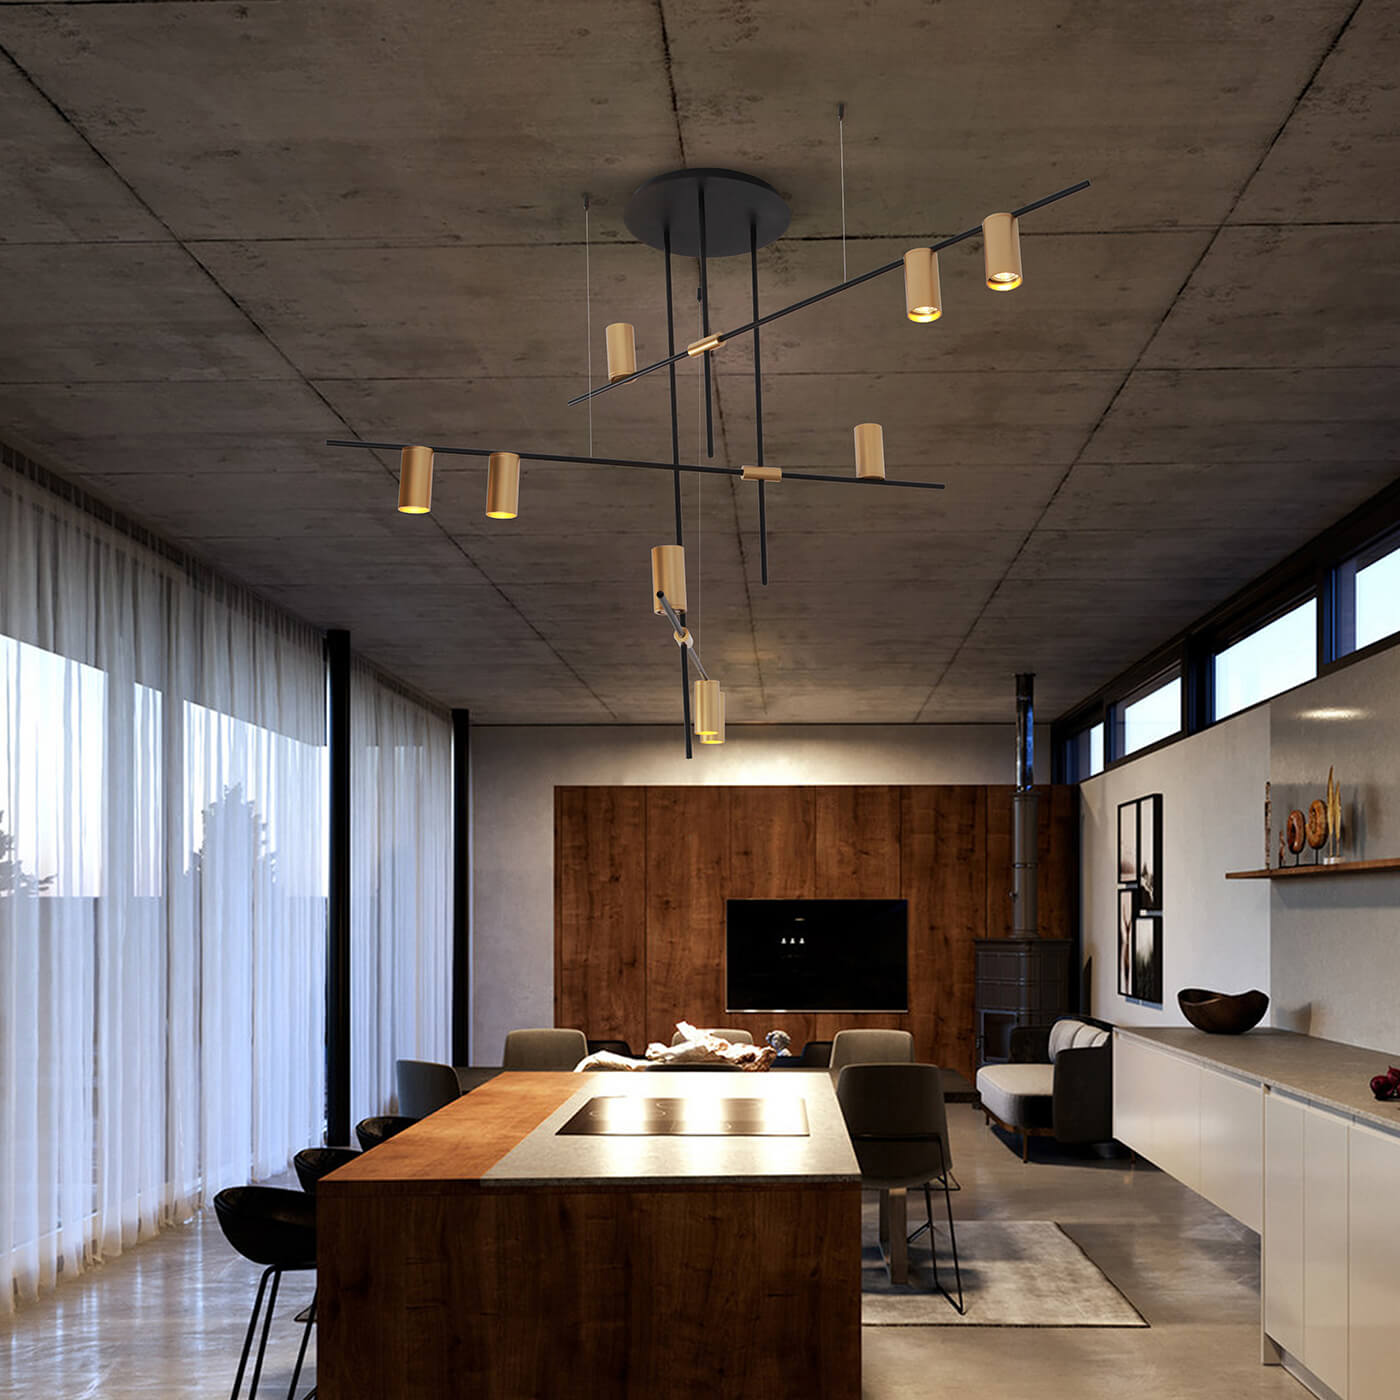 Cauti o Lampa suspendata ELMO S9 aurie - Design apartament modern, dormitor sau living, colectia corpuri de iluminat Domicilio?